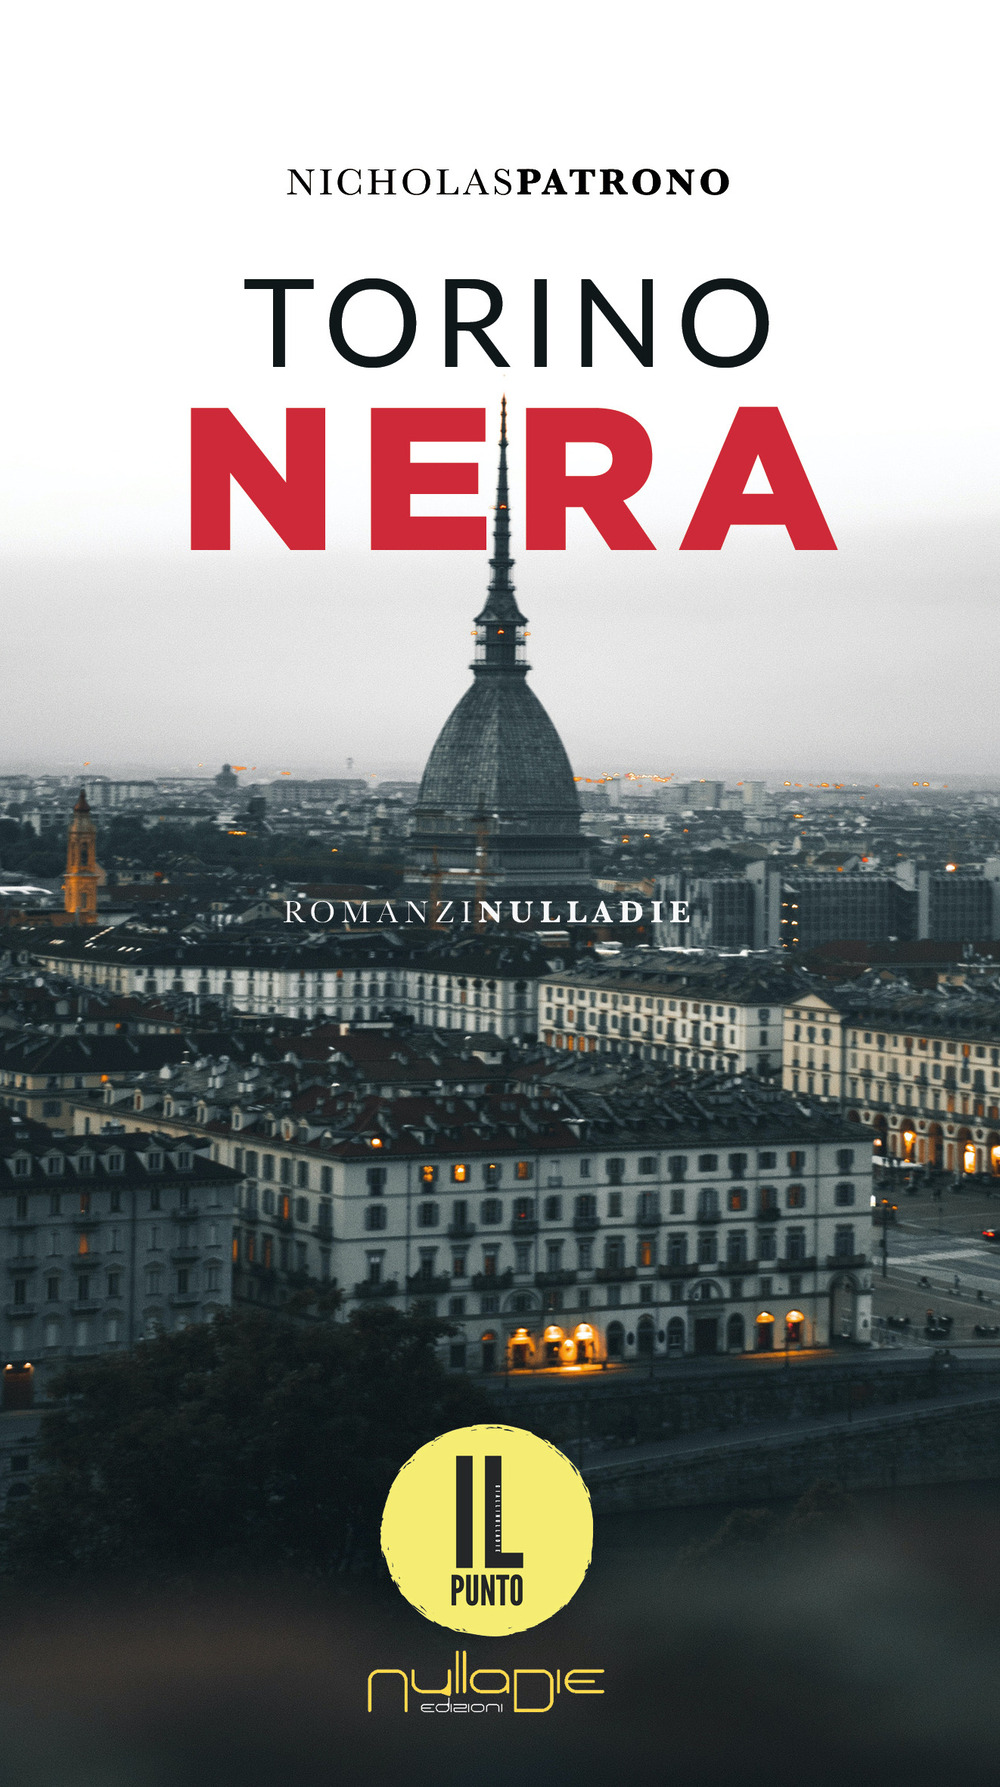 Libri Patrono Nicholas - Torino Nera NUOVO SIGILLATO, EDIZIONE DEL 08/06/2022 SUBITO DISPONIBILE